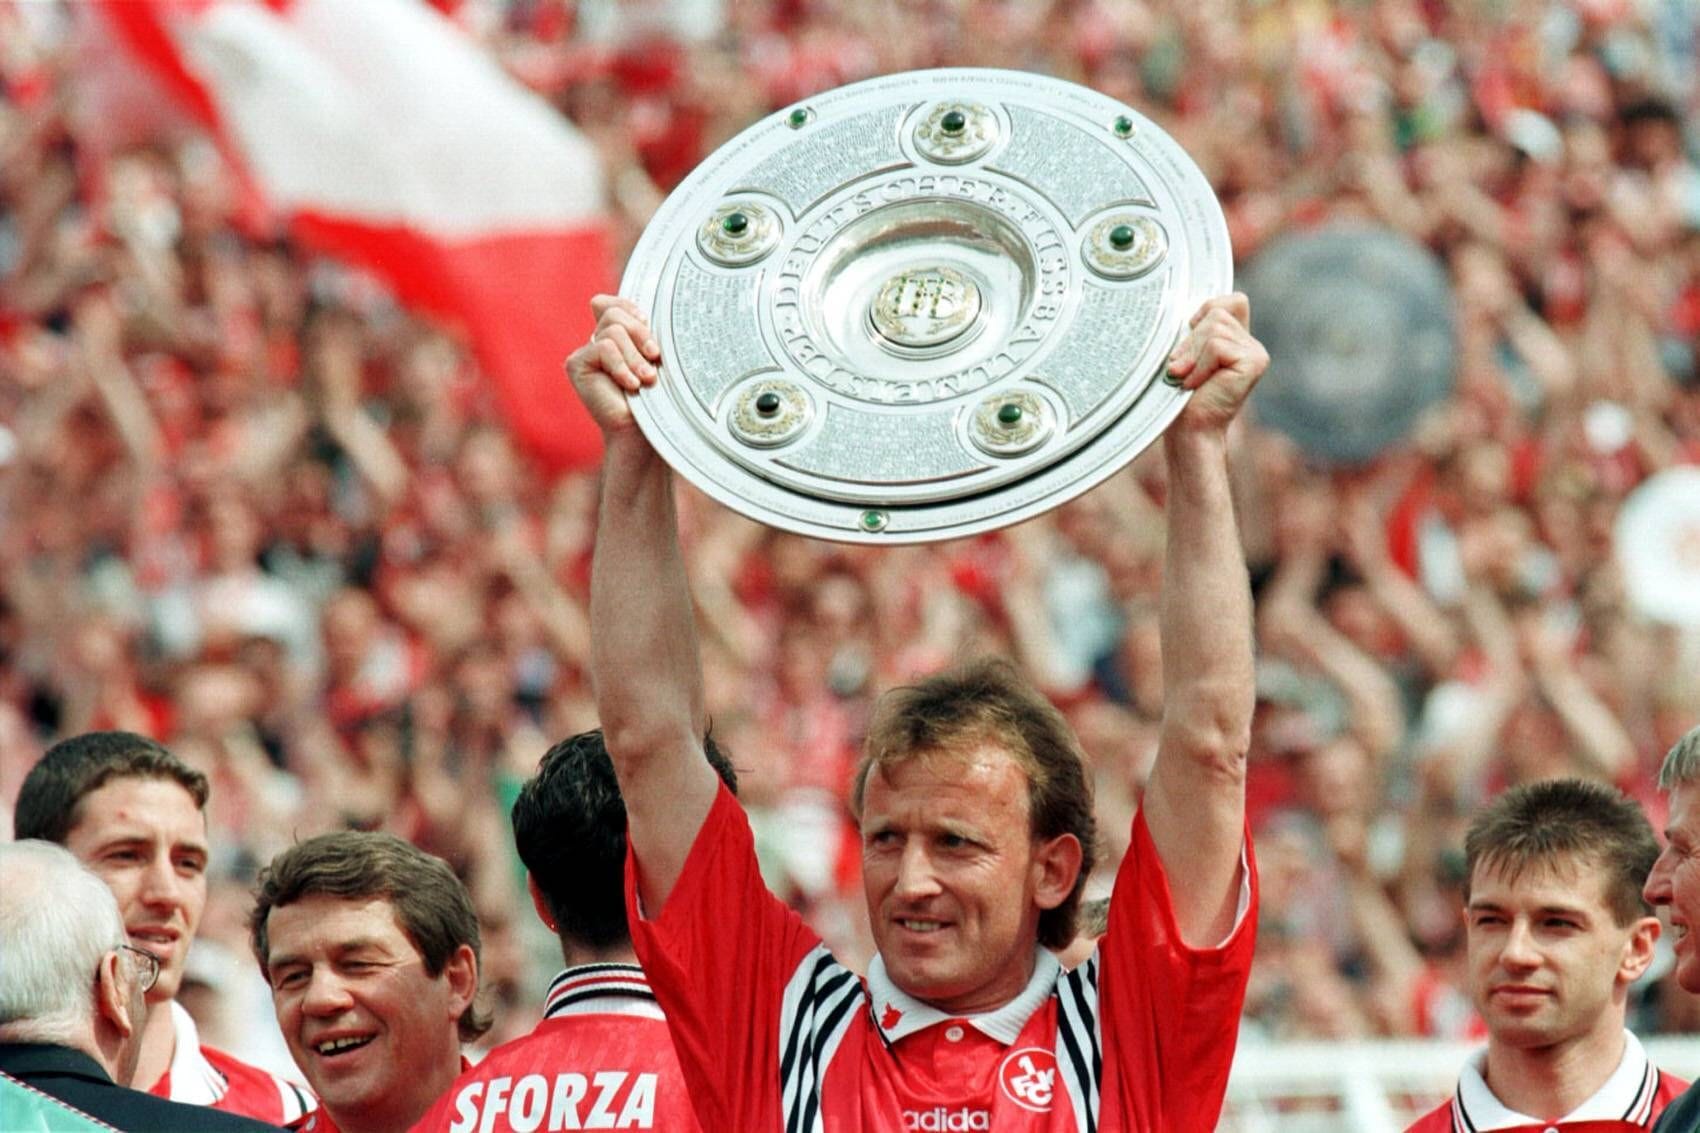 Zur Saison 1993/94 heuerte Brehme zum zweiten Mal in Kaiserslautern an und erlebte noch einmal alle Höhen und Tiefen: Tränenreicher Abstieg und DFB-Pokalsieg 1996, dann der Wiederaufstieg und die direkte Meisterschaft 1998 unter Otto Rehhagel. An deren Anschluss beendete Brehme im Alter von 37 Jahren seine herausragende Laufbahn.